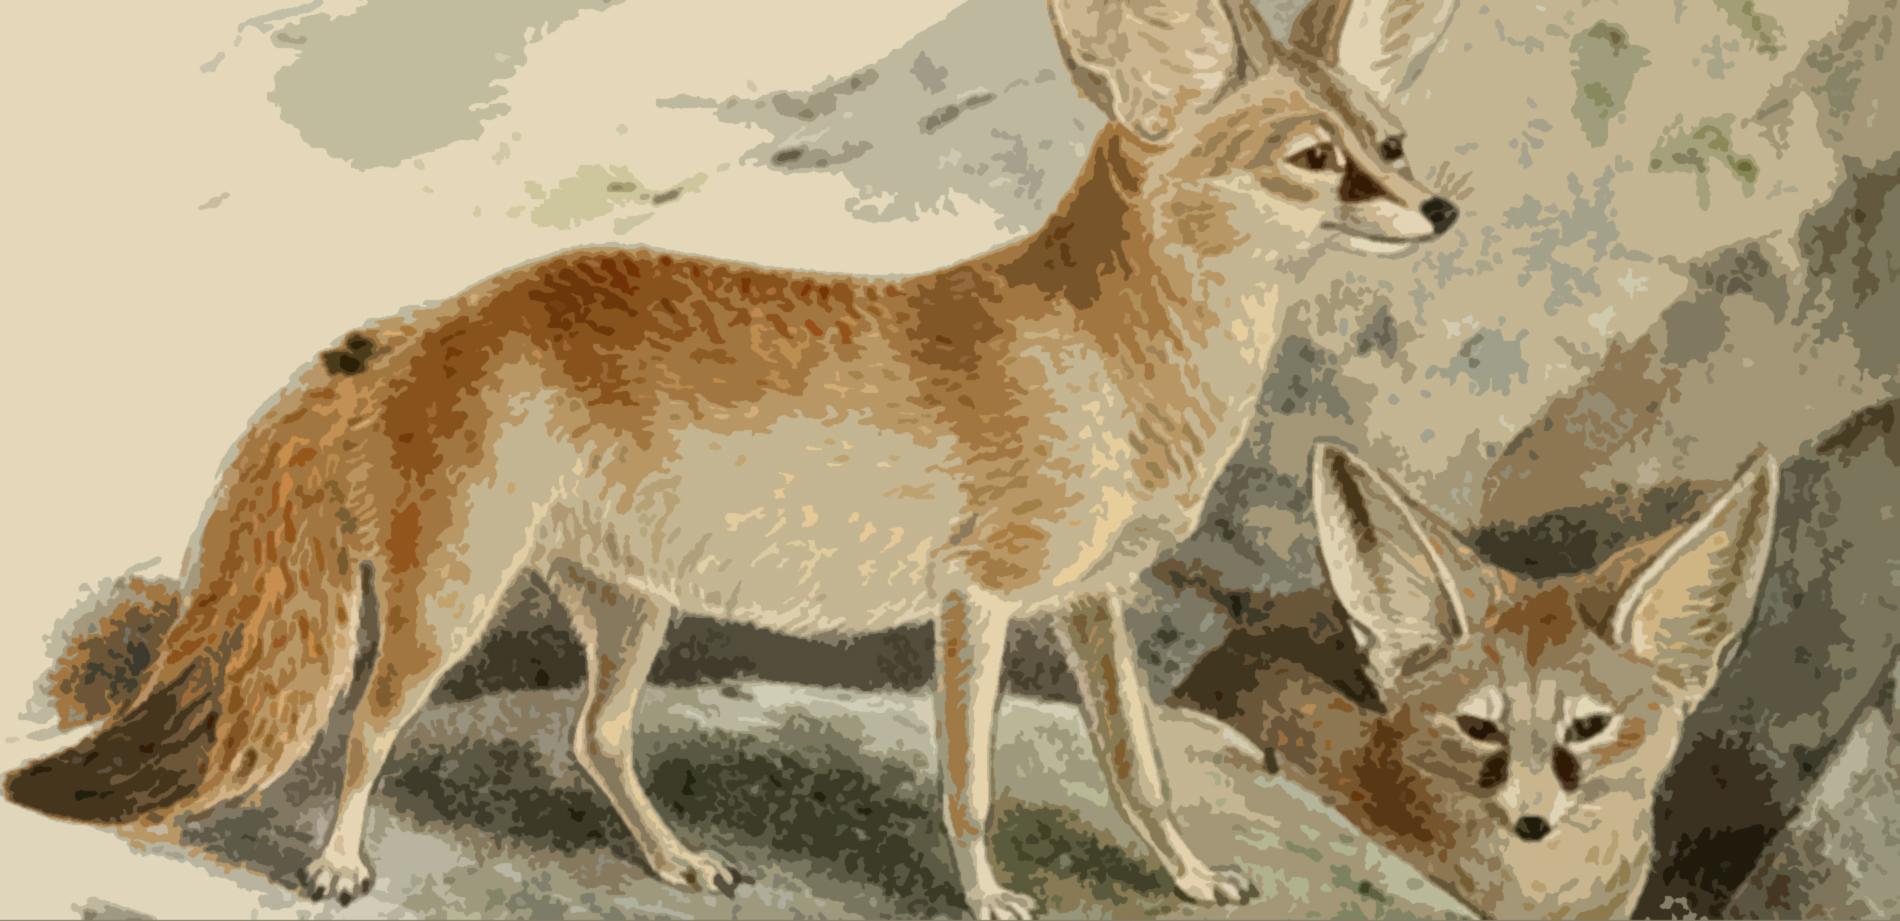 FOX-public domain-Keulemans_FEATURED